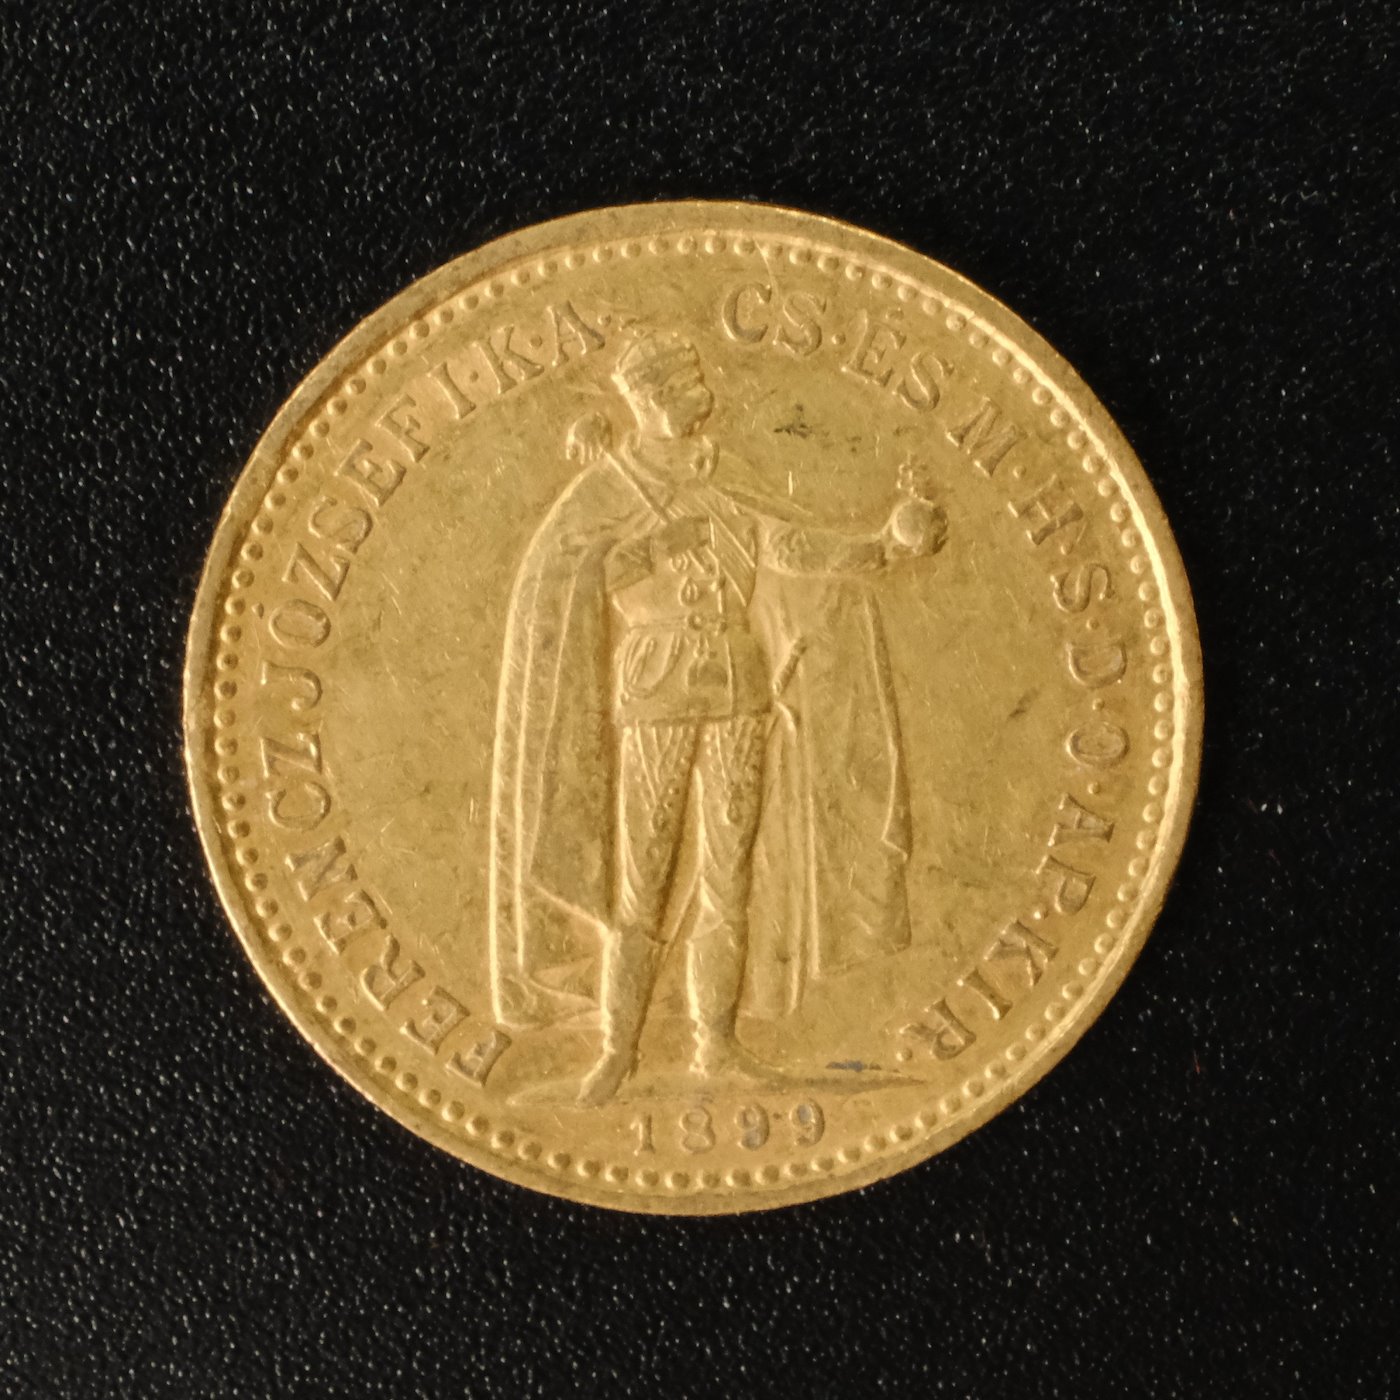 Mince - Rakousko Uhersko zlatá 10 Koruna 1899 K.B. uherská,  Zlato 900/1000, hrubá hmotnost mince 3,387g